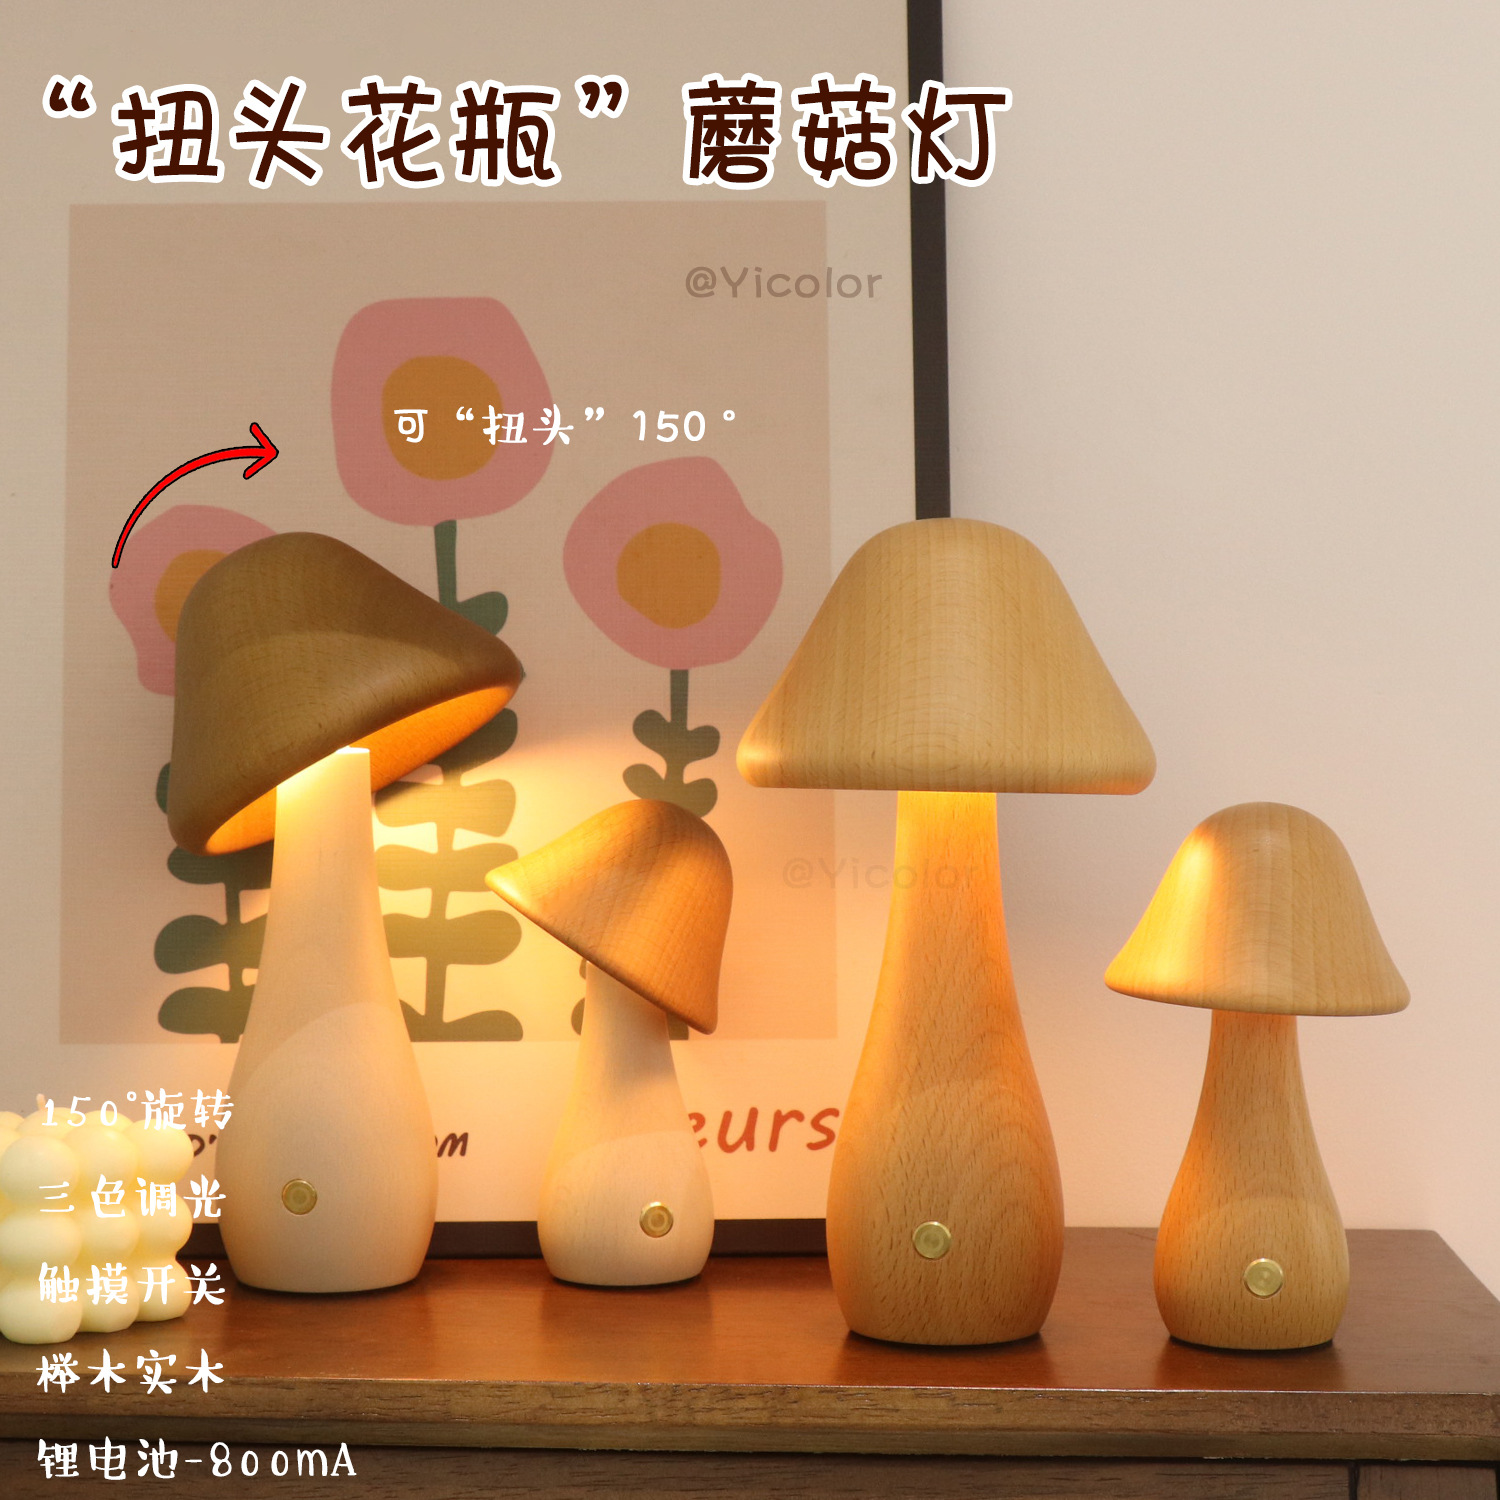 创意氛围床头卧室装饰扭头花瓶状蘑菇灯榉木实木自然摆件小夜